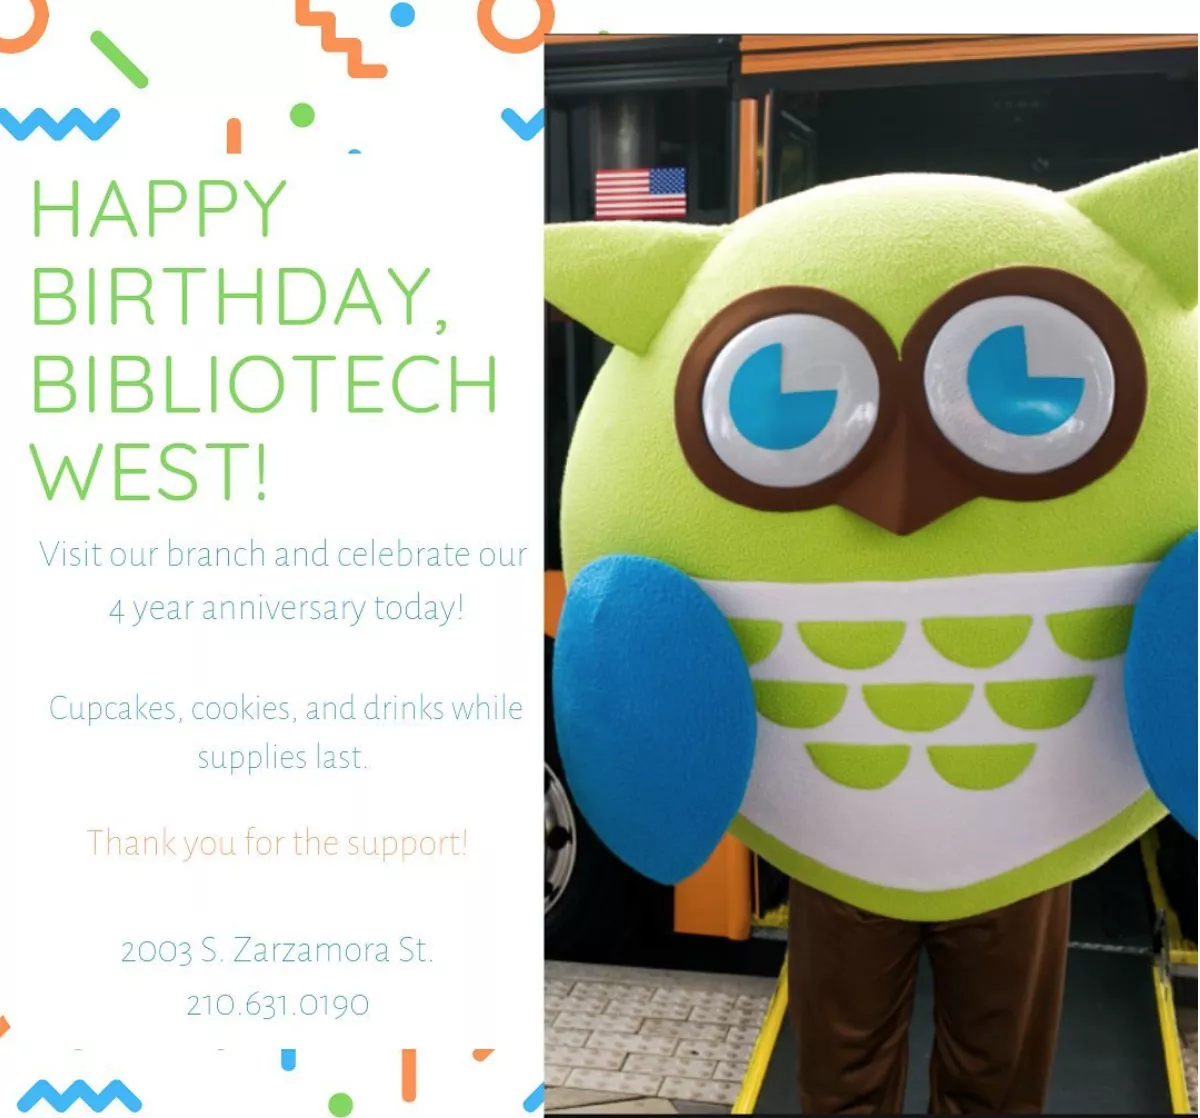 Happy Birthday BiblioTech West!